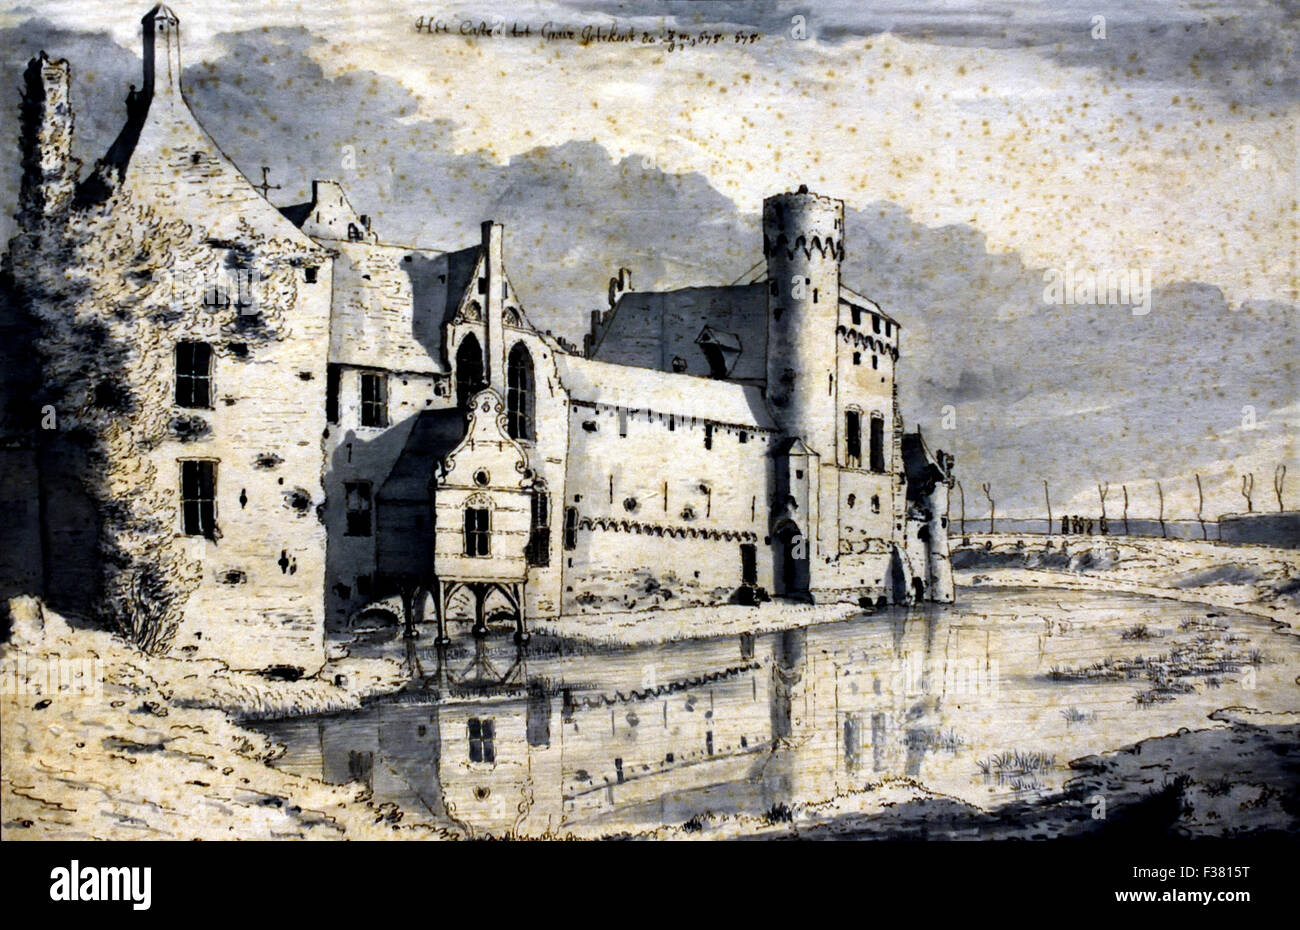 Vue sur l'arrière du château 1675 Graves 1650 - 1721 Valentijn Klotz dessin Néerlandais Pays-Bas Banque D'Images